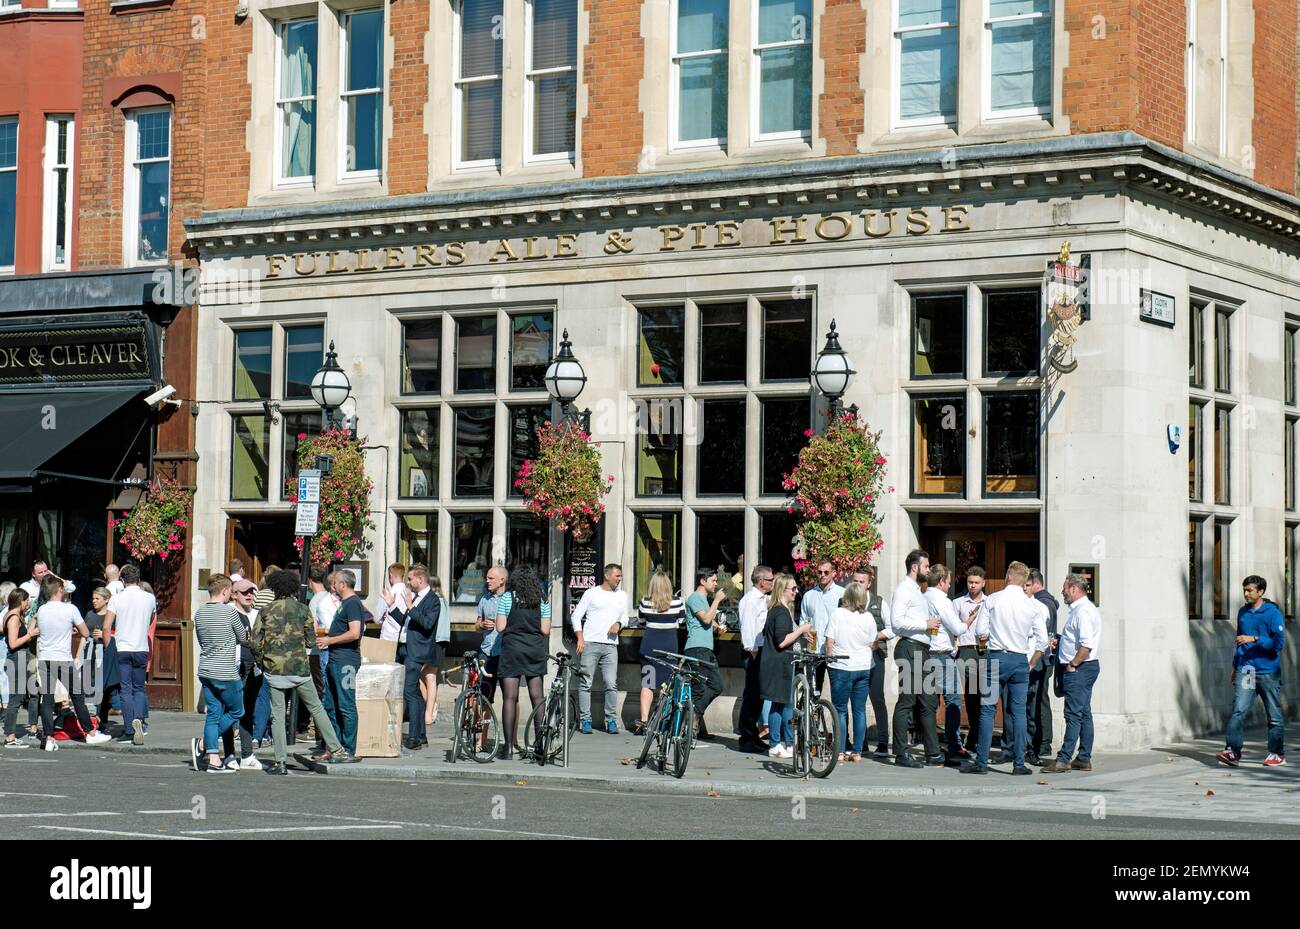 Personnes buvant à l'extérieur de Fullers Ale & Pie House, West Smithfield, City of London Banque D'Images